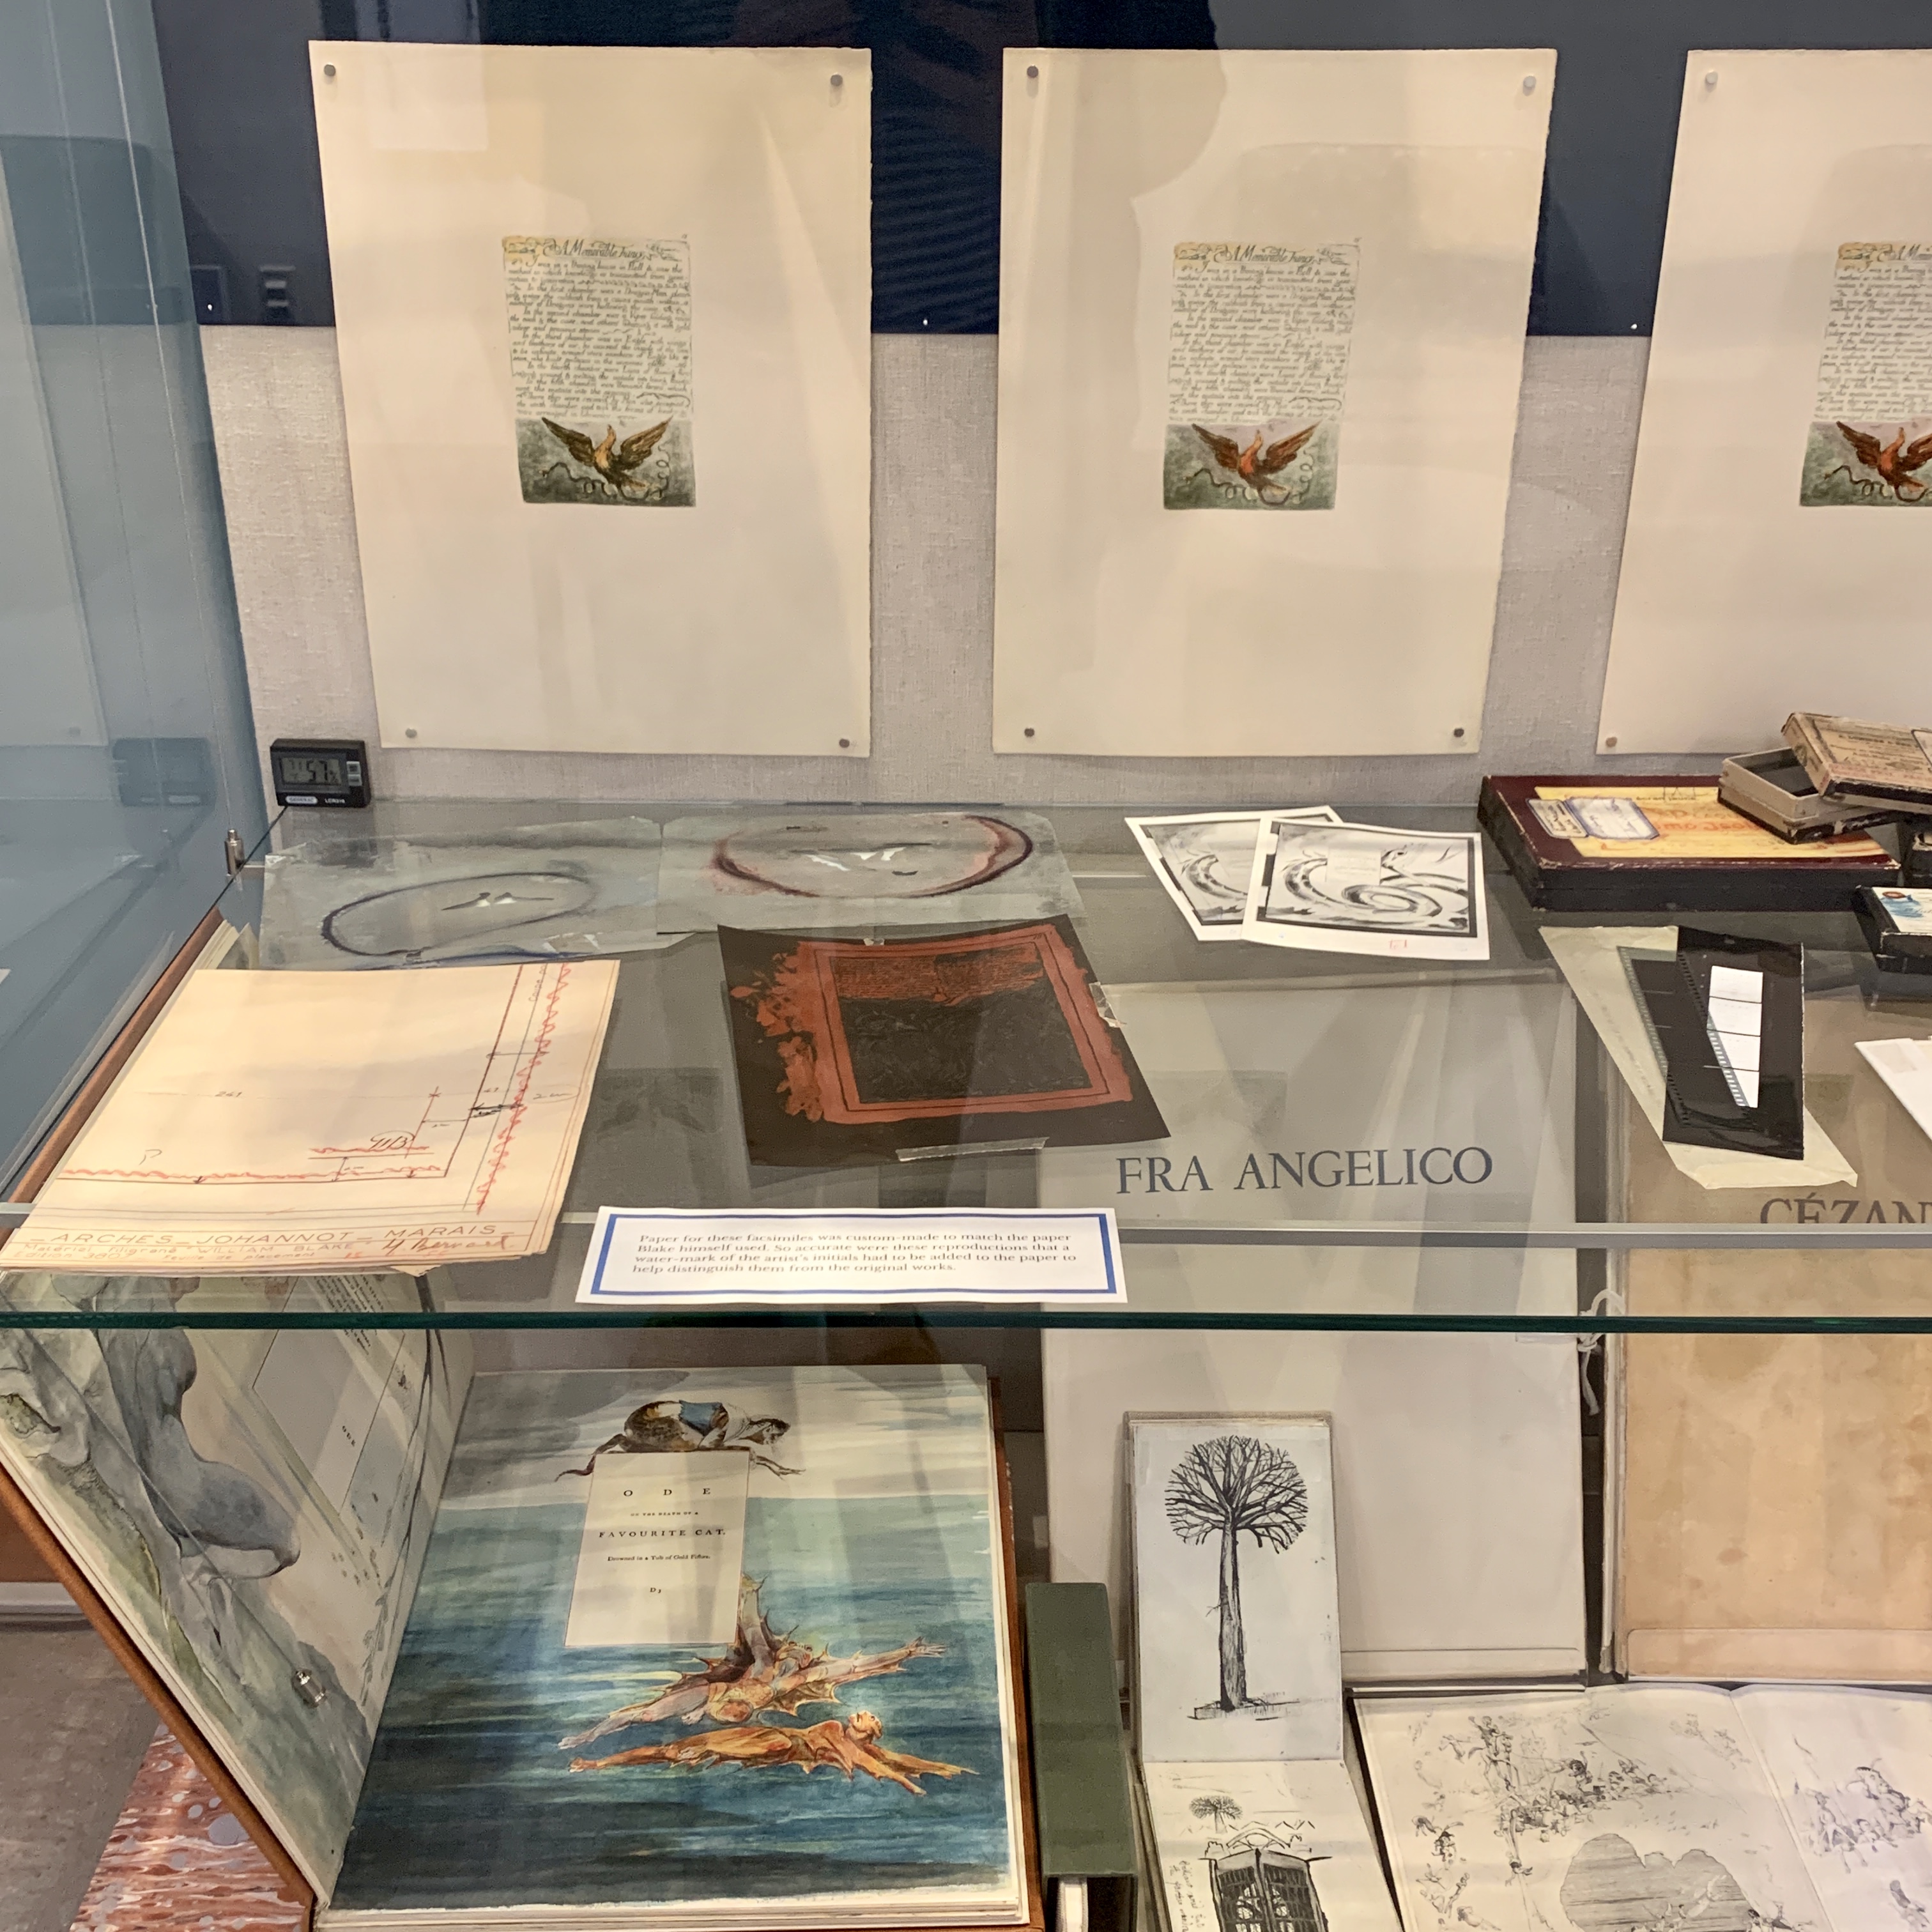 Trianon Press Archive exhibit